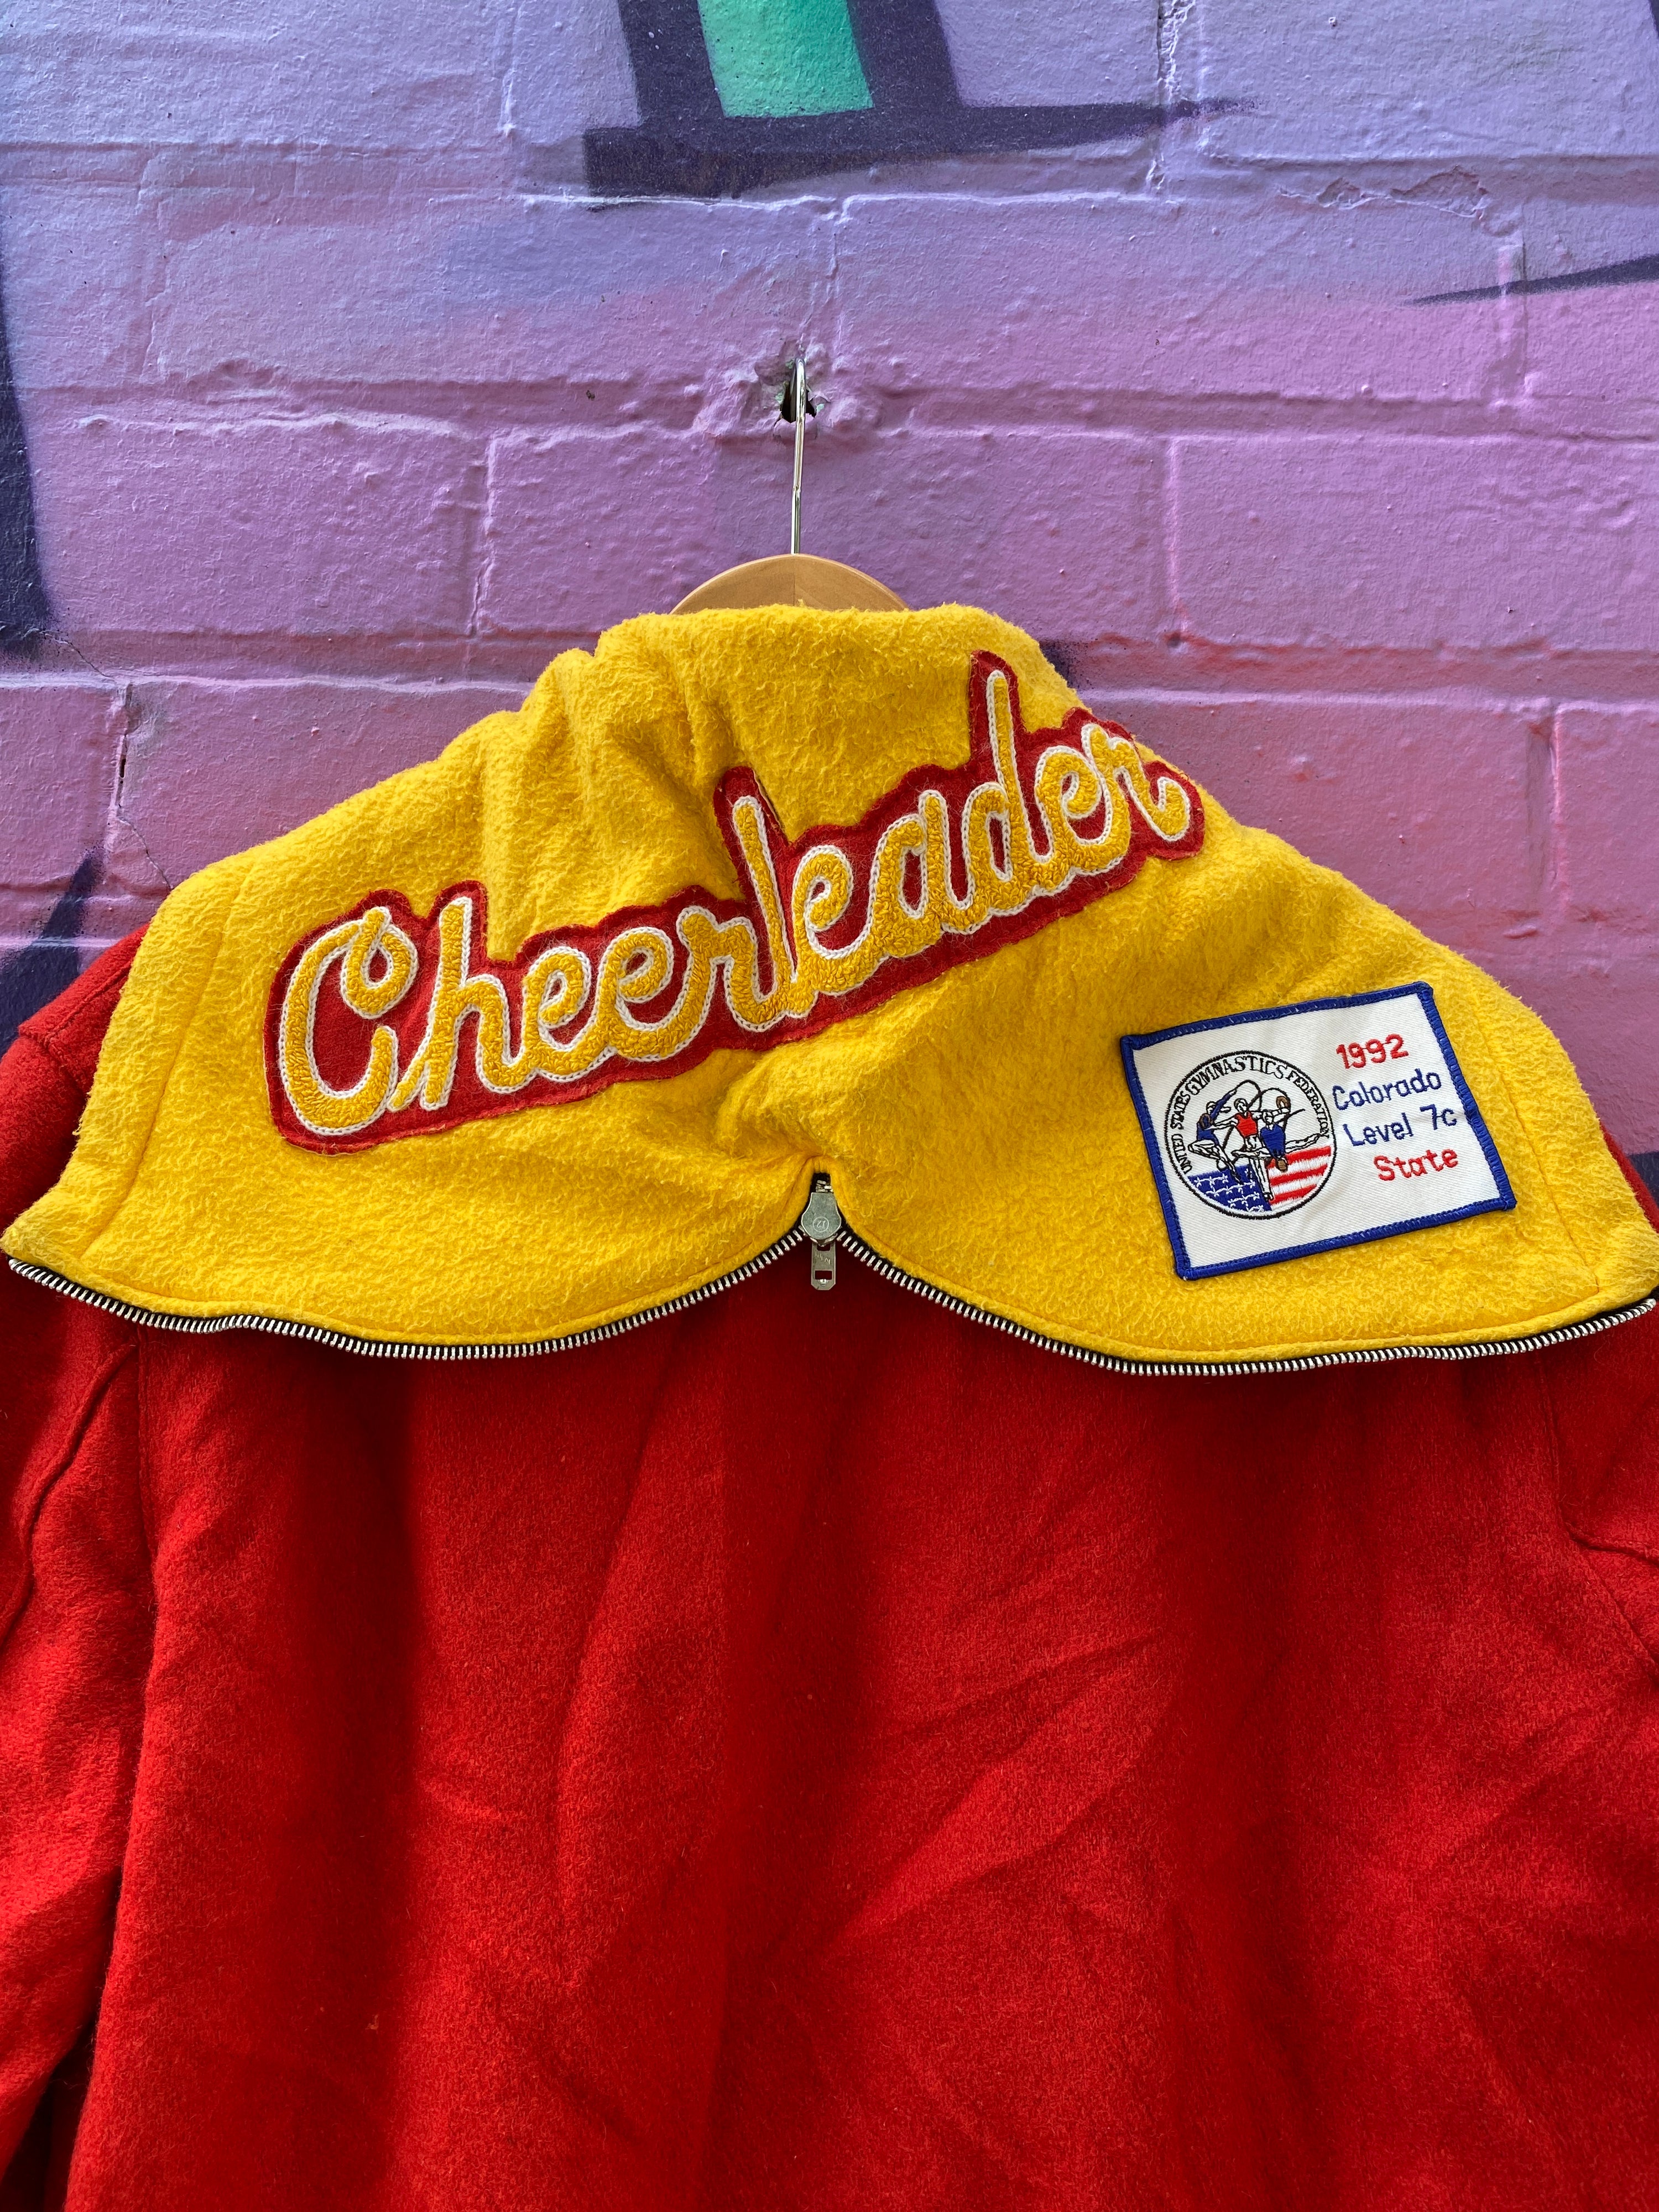 M - Vintage 1993 Colorado State Cheerleeder Varsity Jacket 'Meilan' with Badges